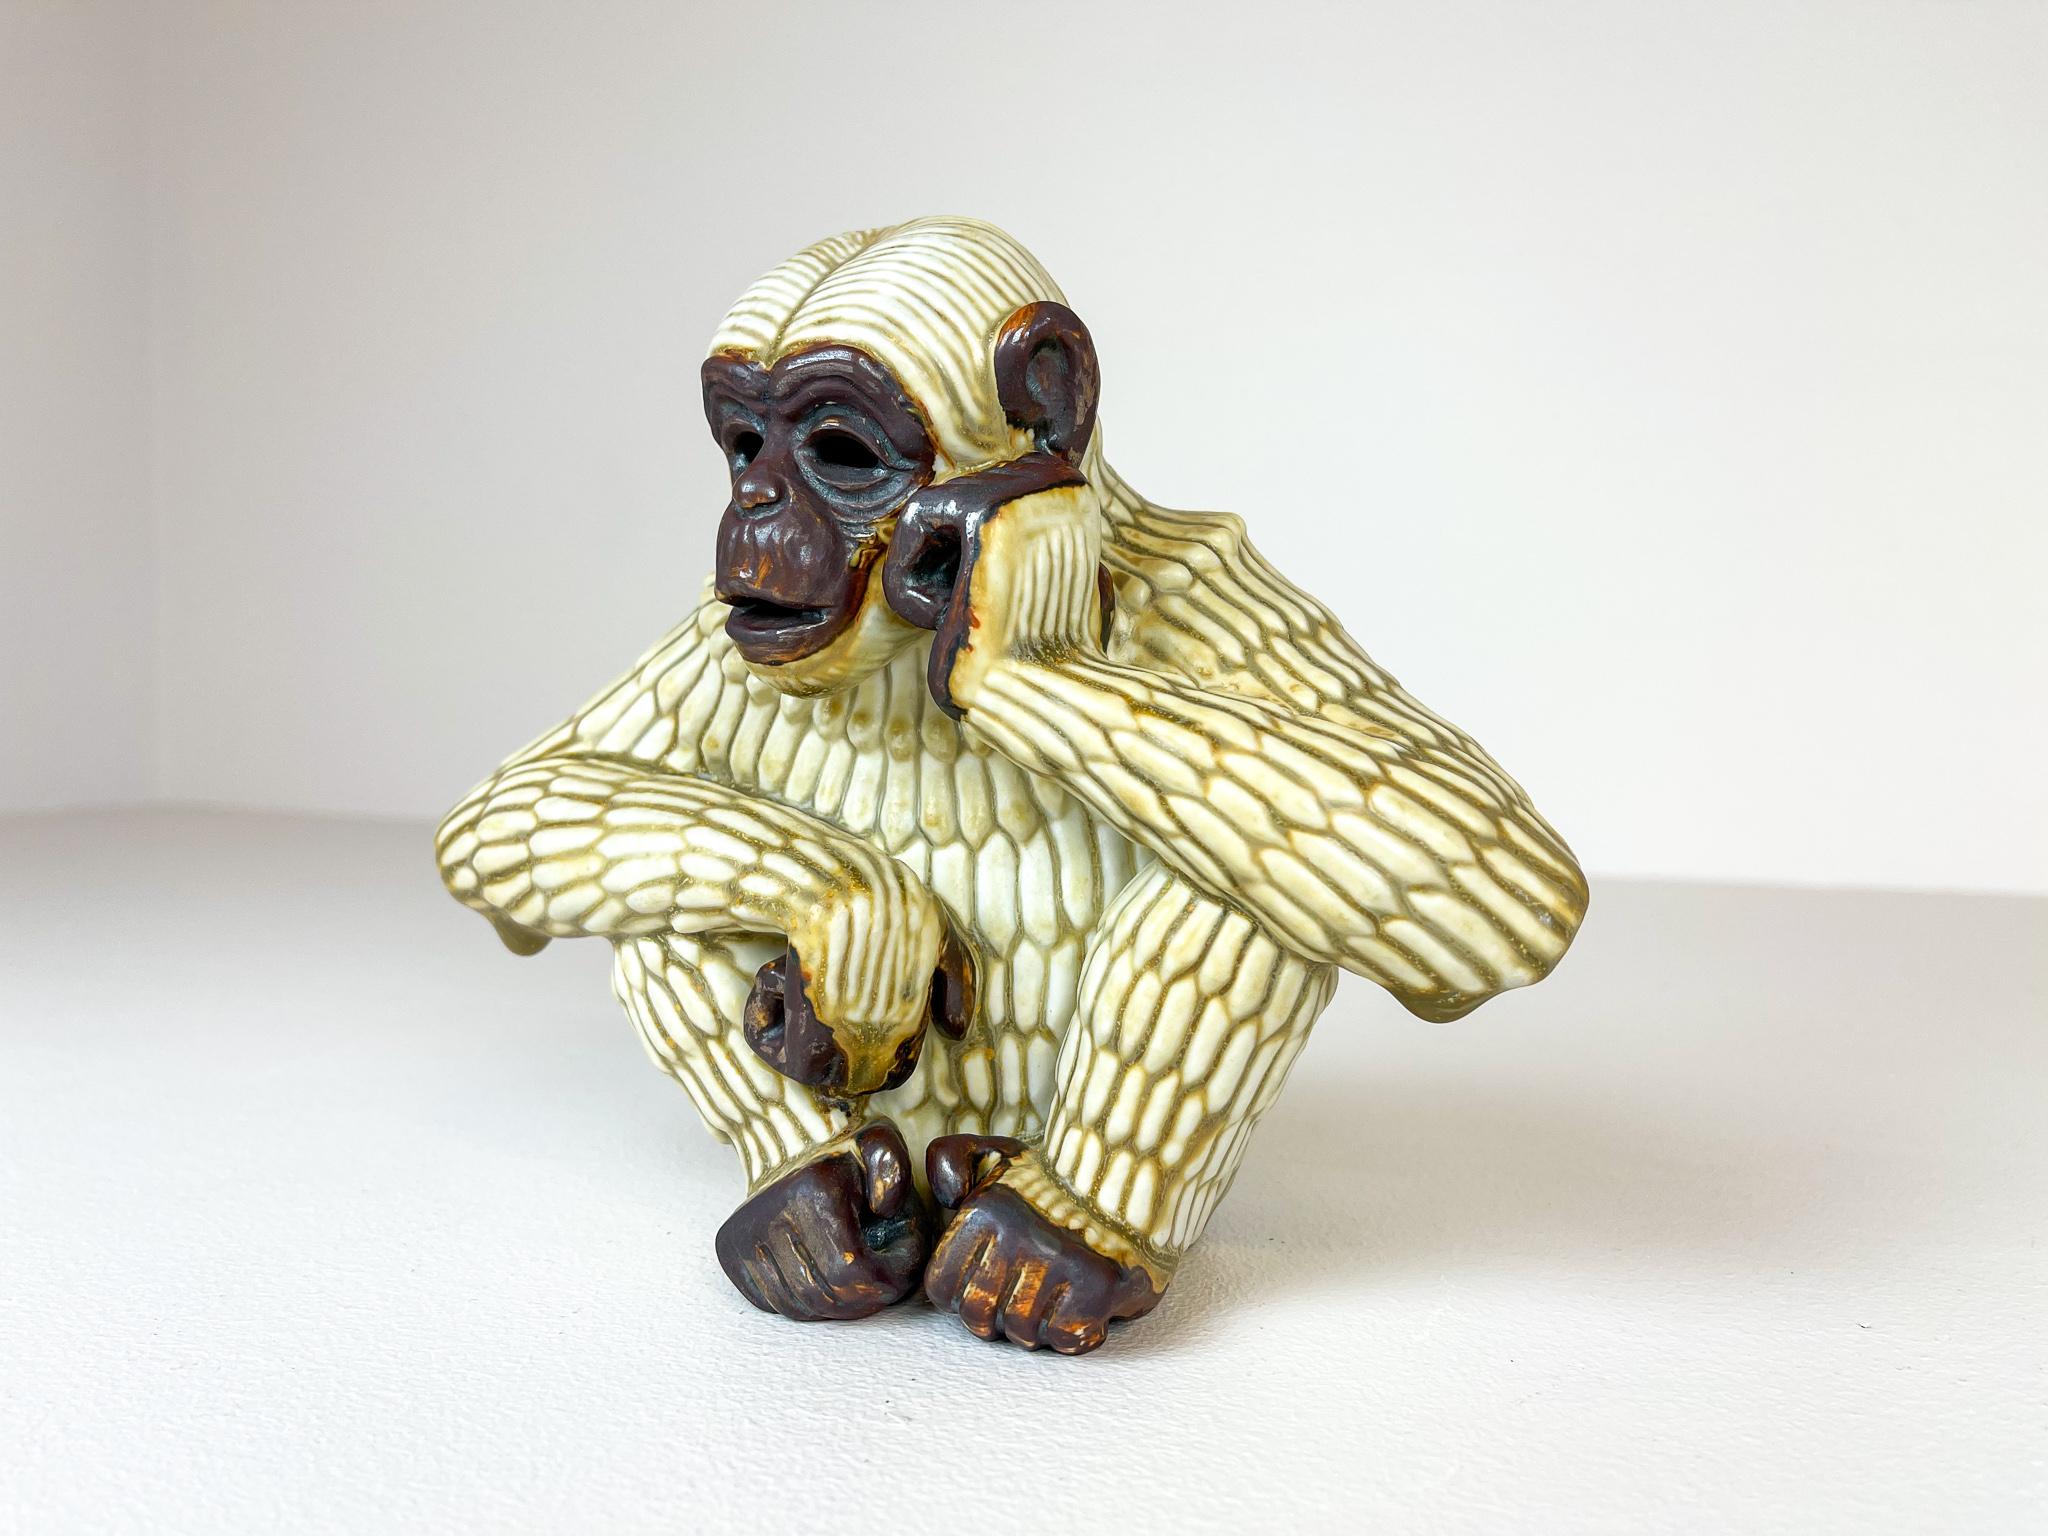 Fantastique sculpture d'un singe qui a beaucoup de choses en tête, capturée dans de superbes formes. Produit par Rörstrand et le fabricant/designer Gunnar Nylund. Fabriqué en Suède au milieu du siècle dernier. Magnifique vitrage et bon état de